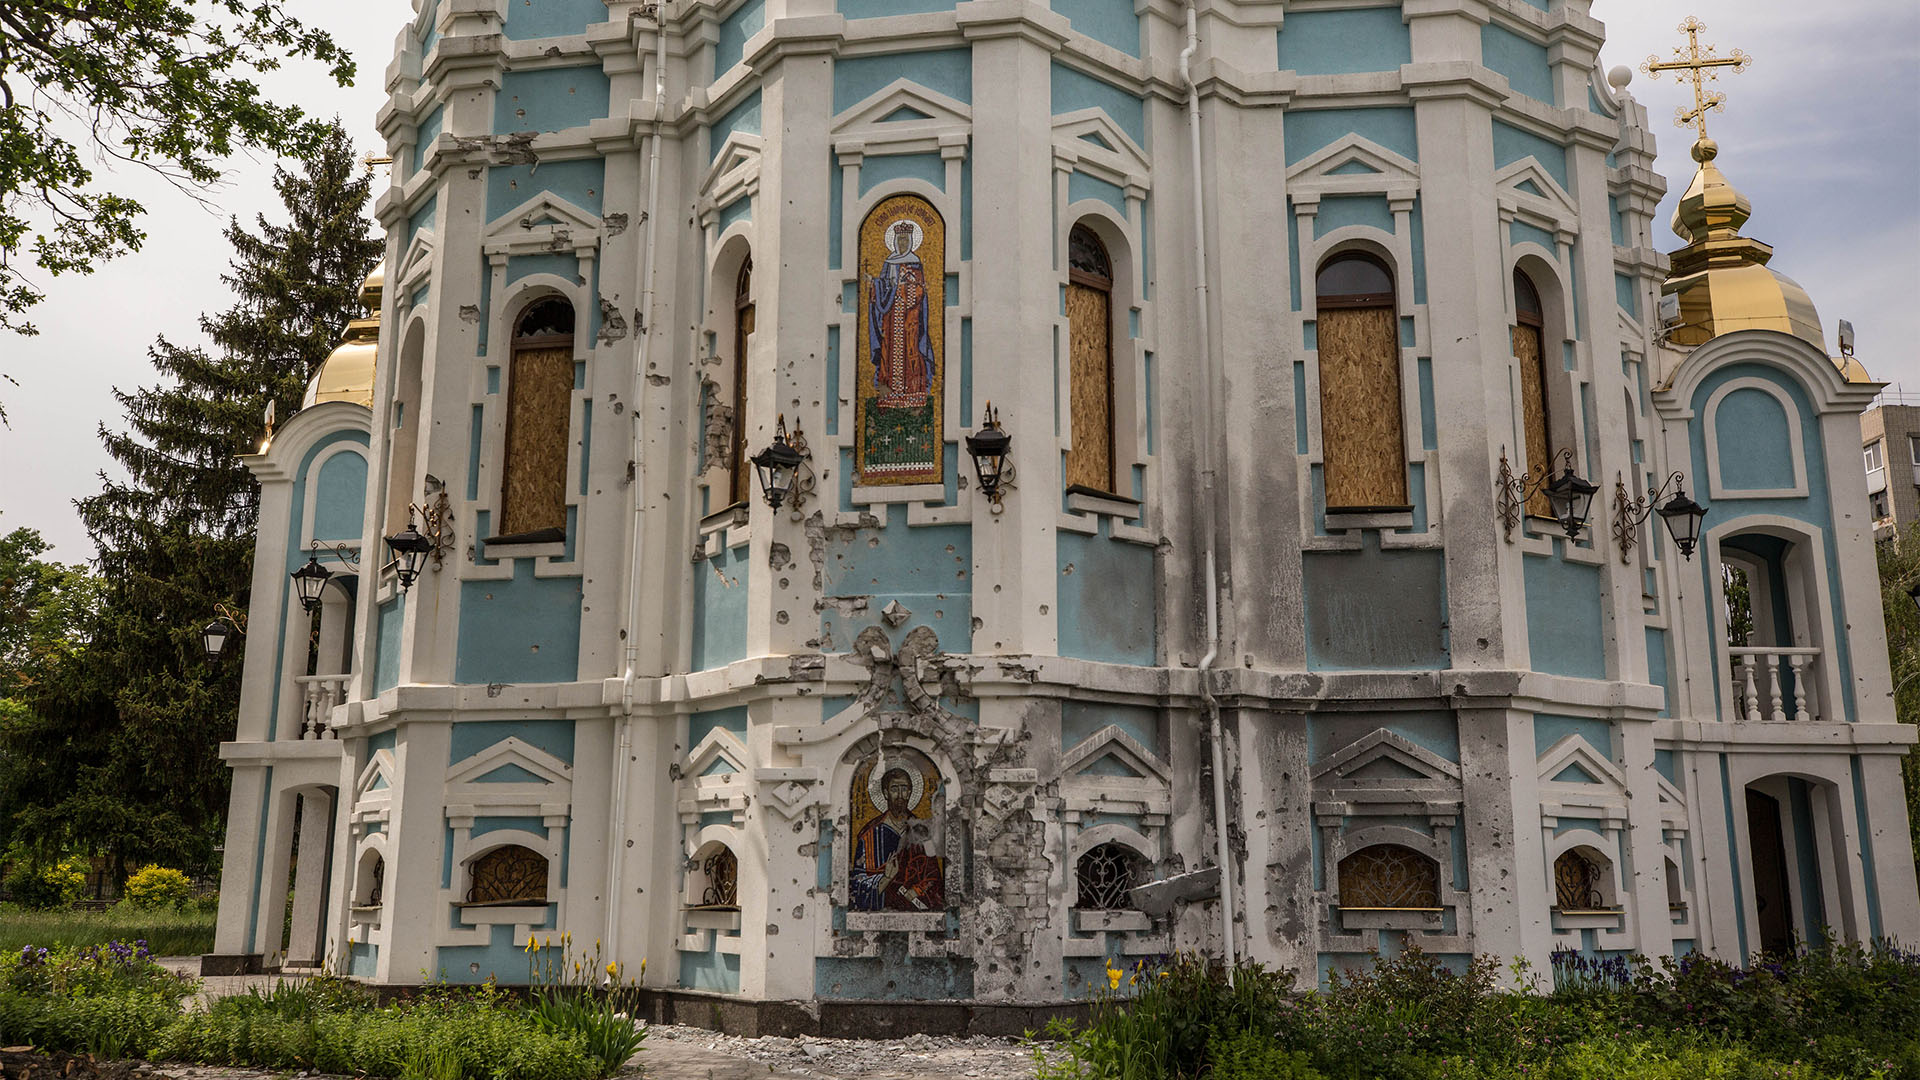 152 monumentos o lugares históricos protegidos han sufrido daños en Ucrania a causa de la invasión rusa
